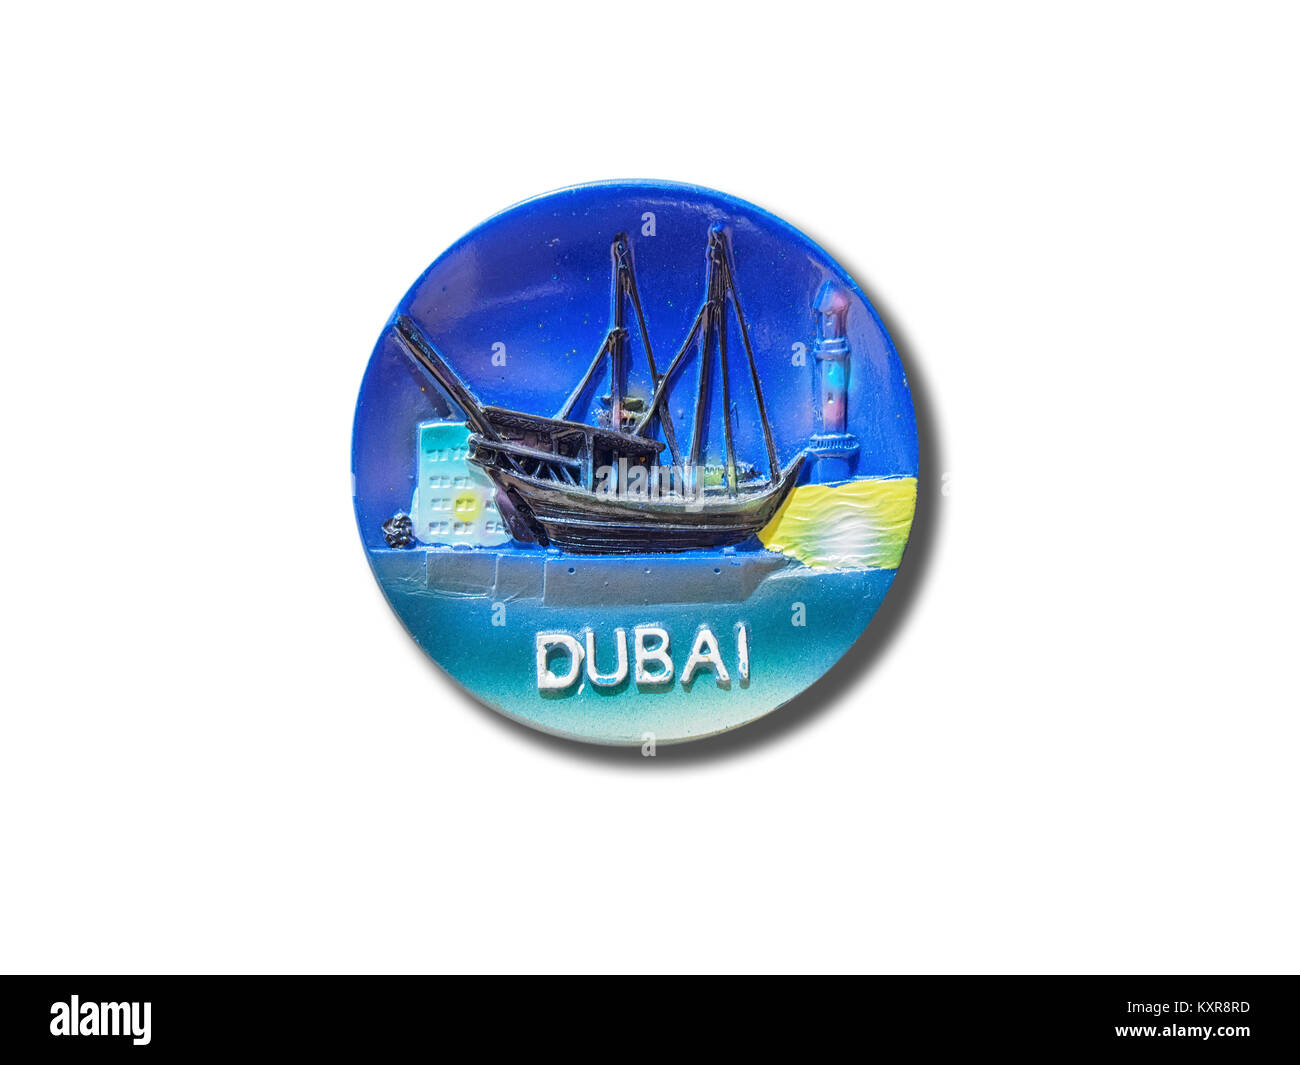 Dubaï (Émirats arabes unis) aimant de réfrigérateur souvenir isolé sur fond blanc Banque D'Images